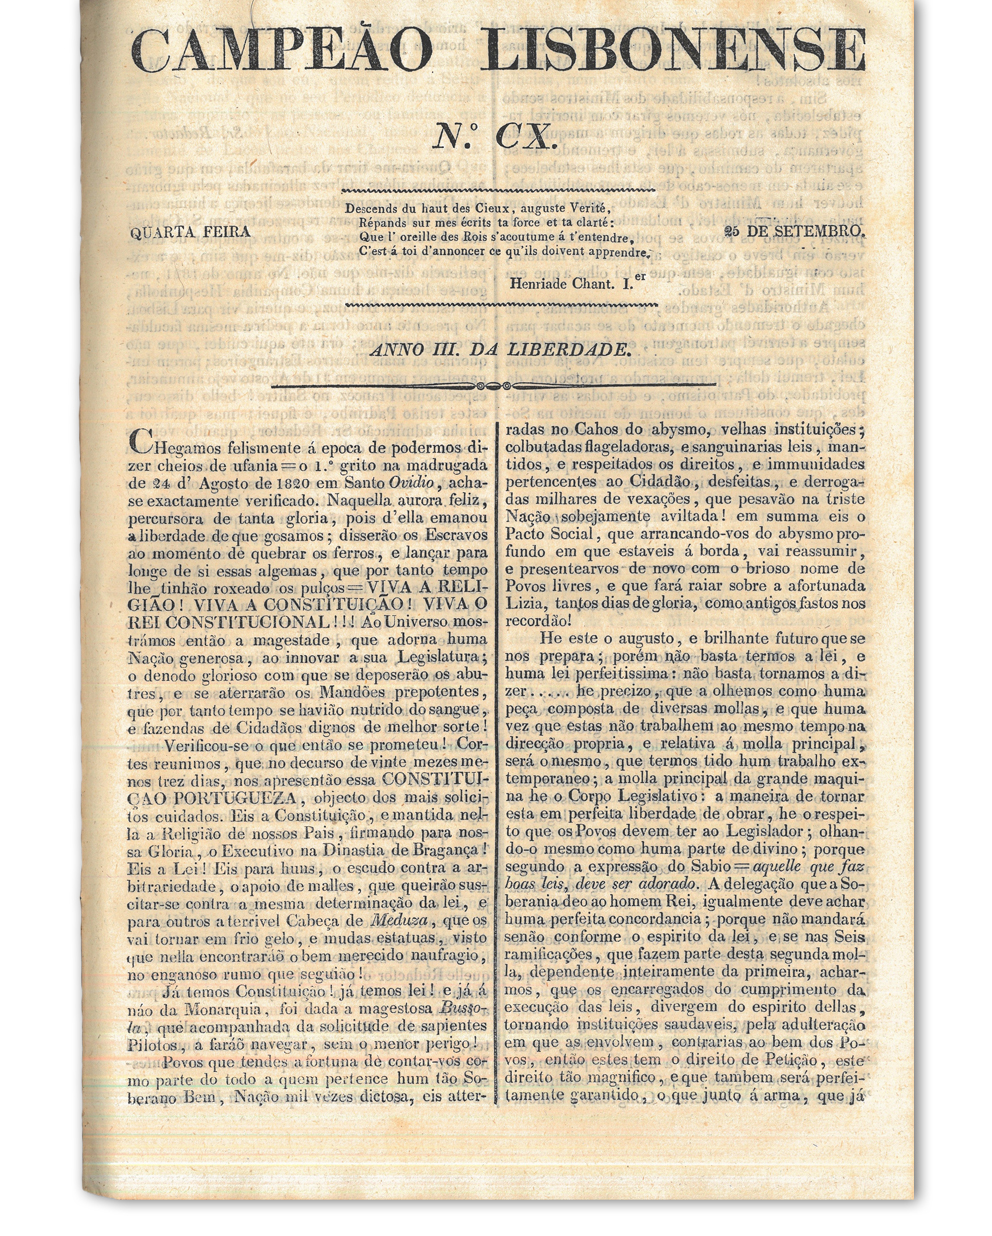 [Notícia da aprovação da Constituição]. Campeão lisbonense. Lisboa : Imprensa Nacional, n.º CX, 25 set. 1822. Cota: 4/1822